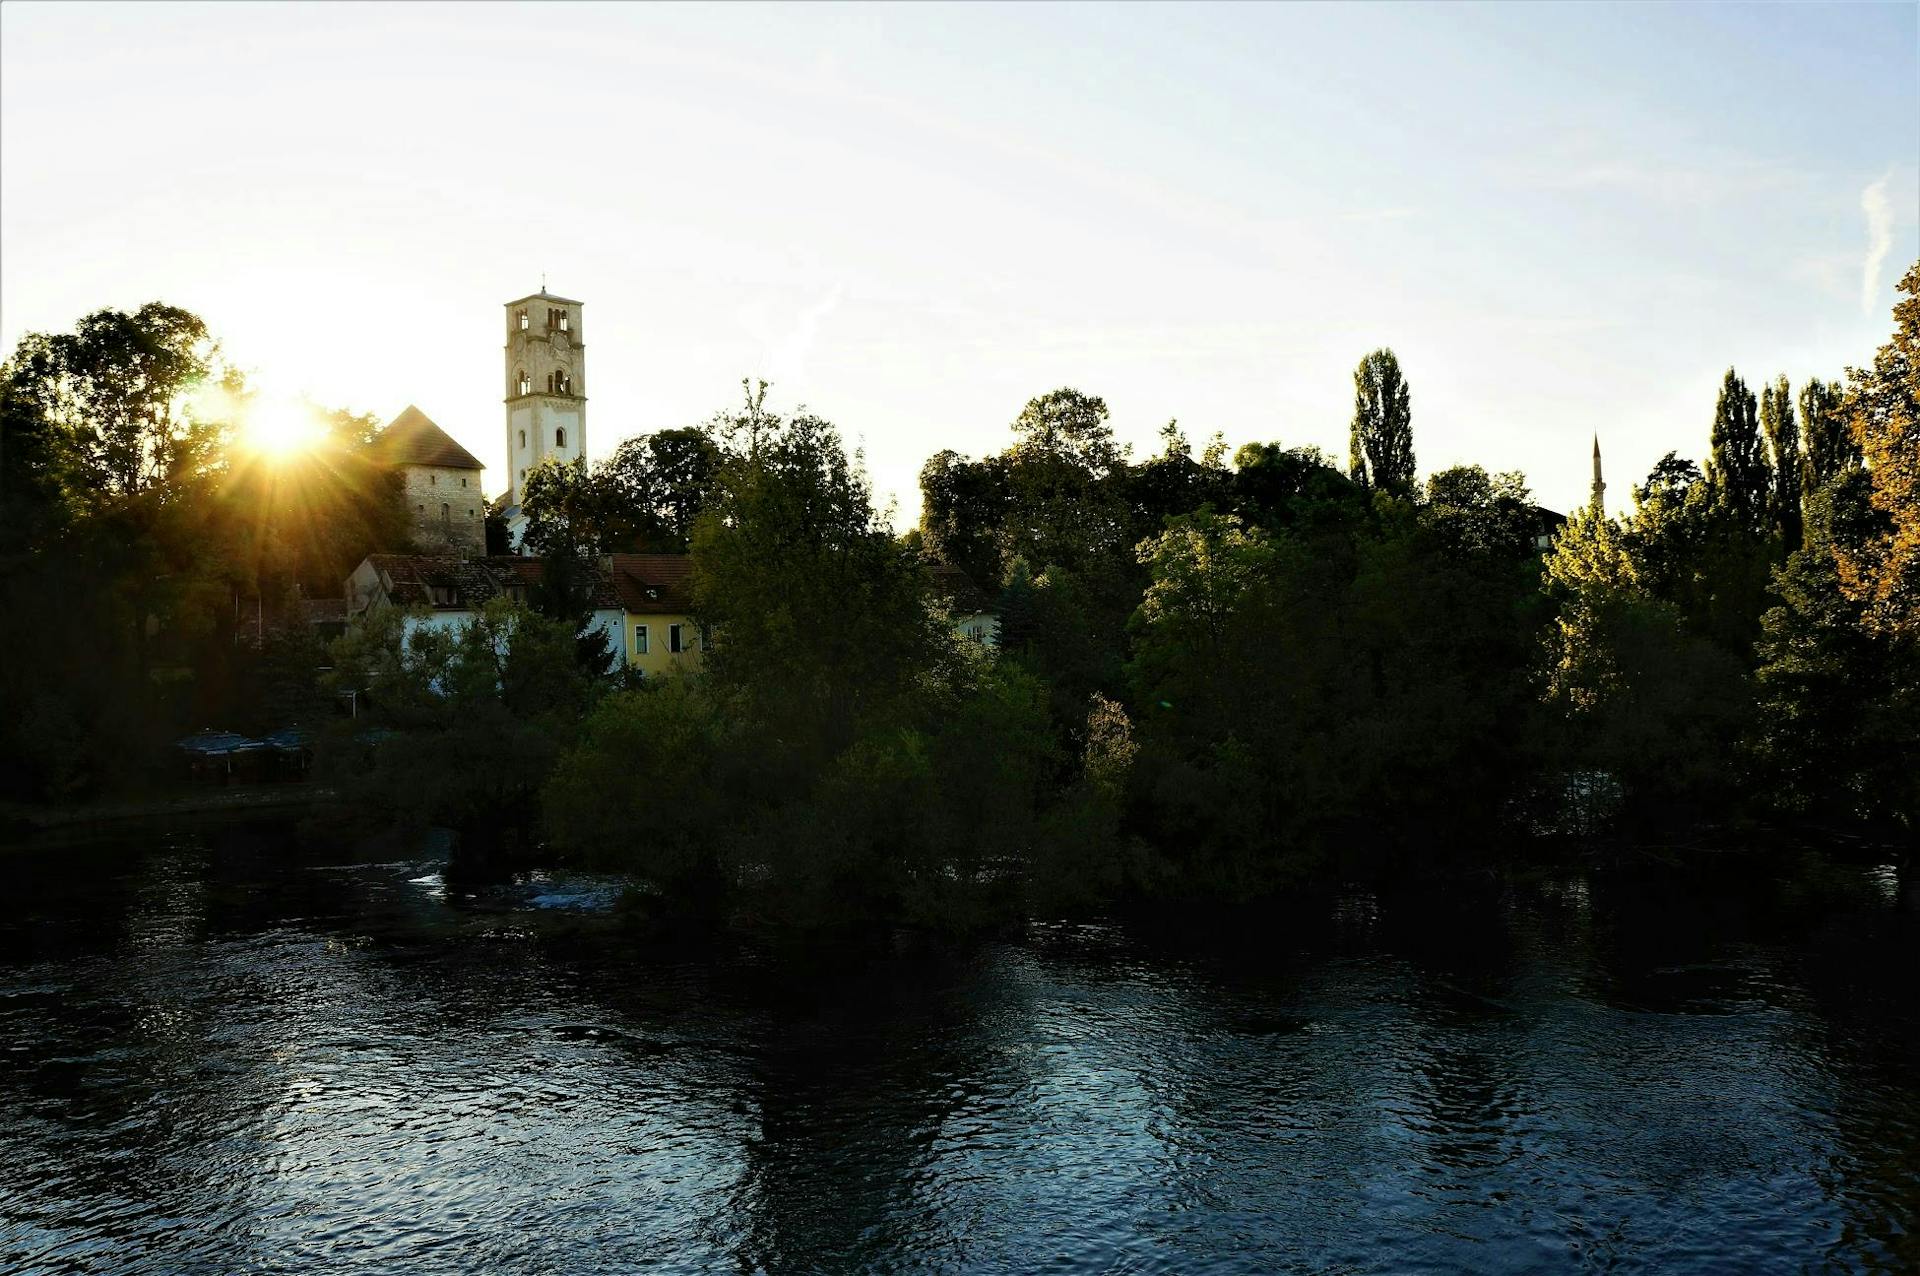 Sunset in Bihac by the Una river. 